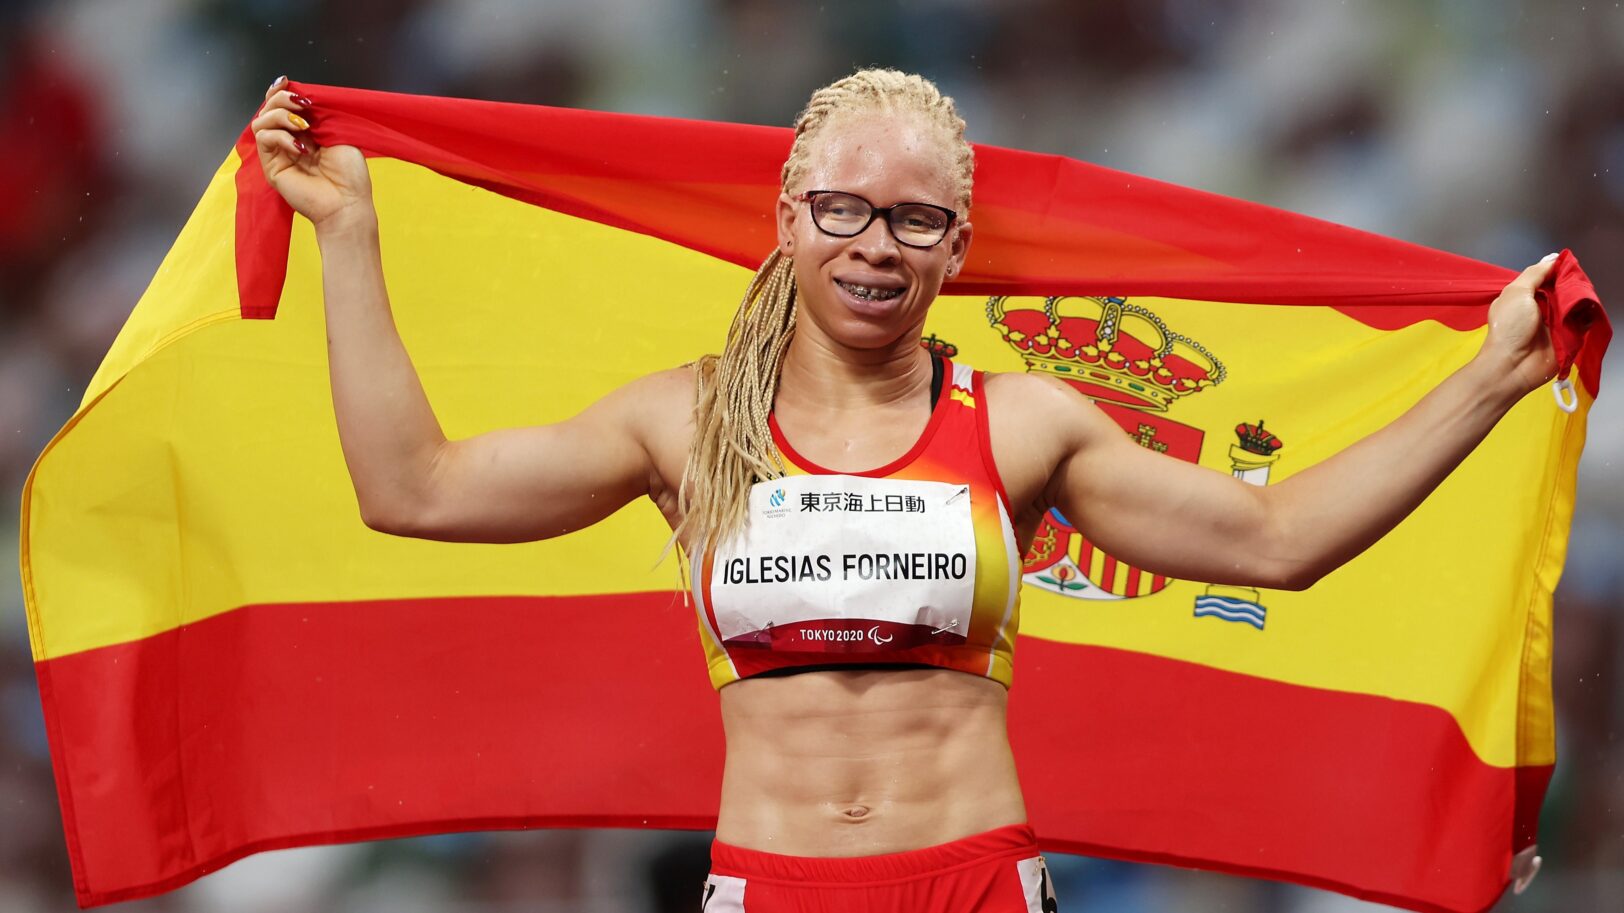 La vice-championne du 100m fuit le Mali pour sa couleur de peau